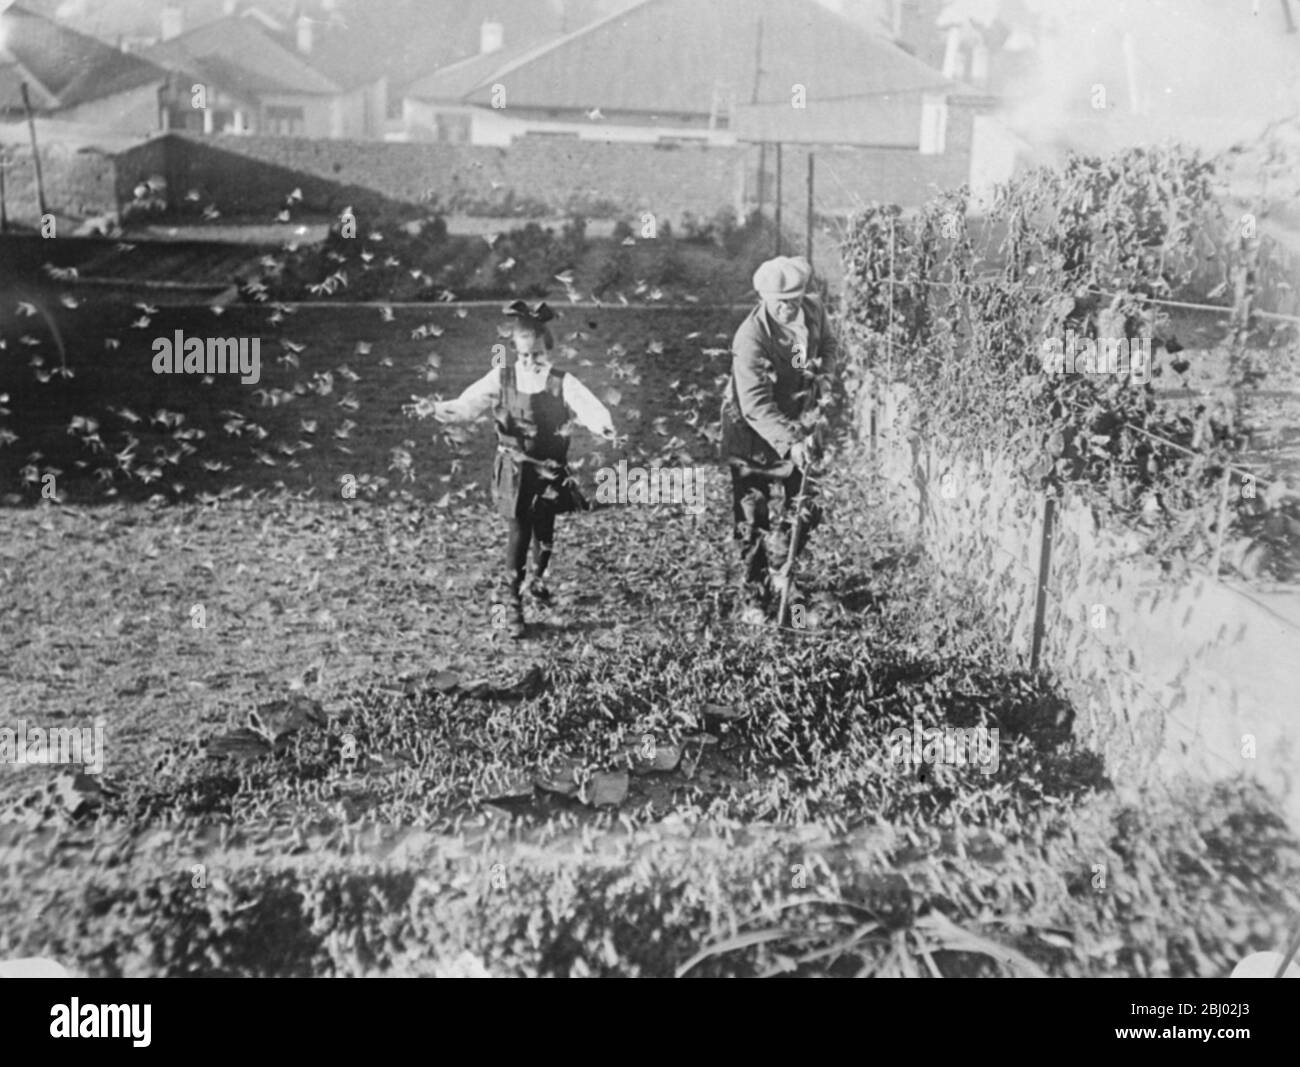 La lotta grinta degli agricoltori con enormi nuvole di locuste . Fiorente colture distrutte nella Transvaal occidentale - Locuste aggrappate alle mura di una casa a Johannesburg - 22 maggio 1923 Foto Stock